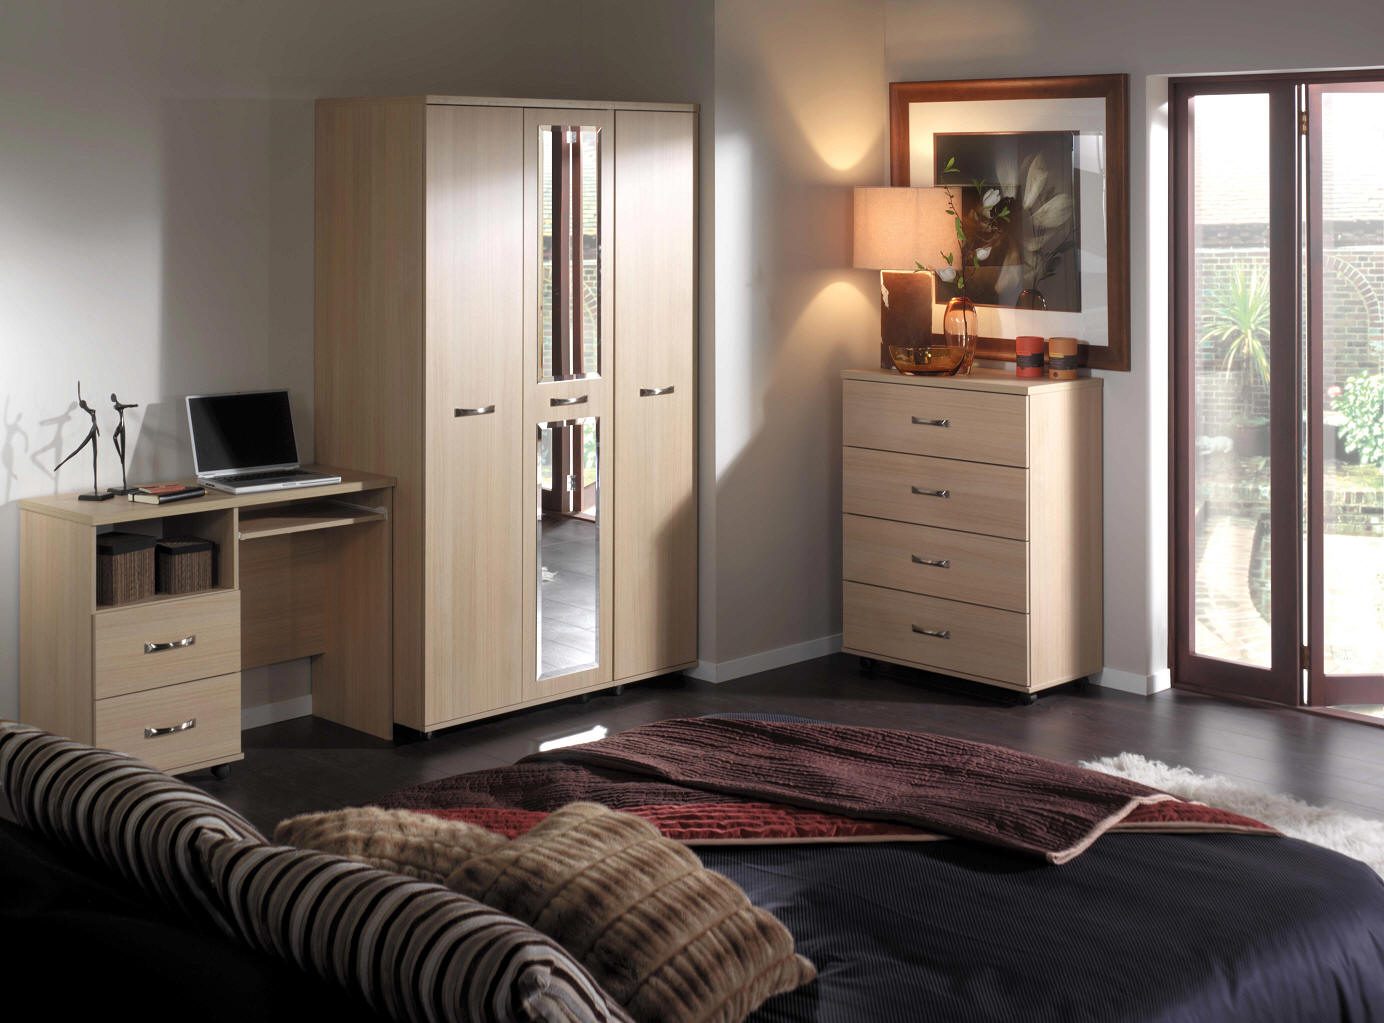 cozy bedroom furniture ideas